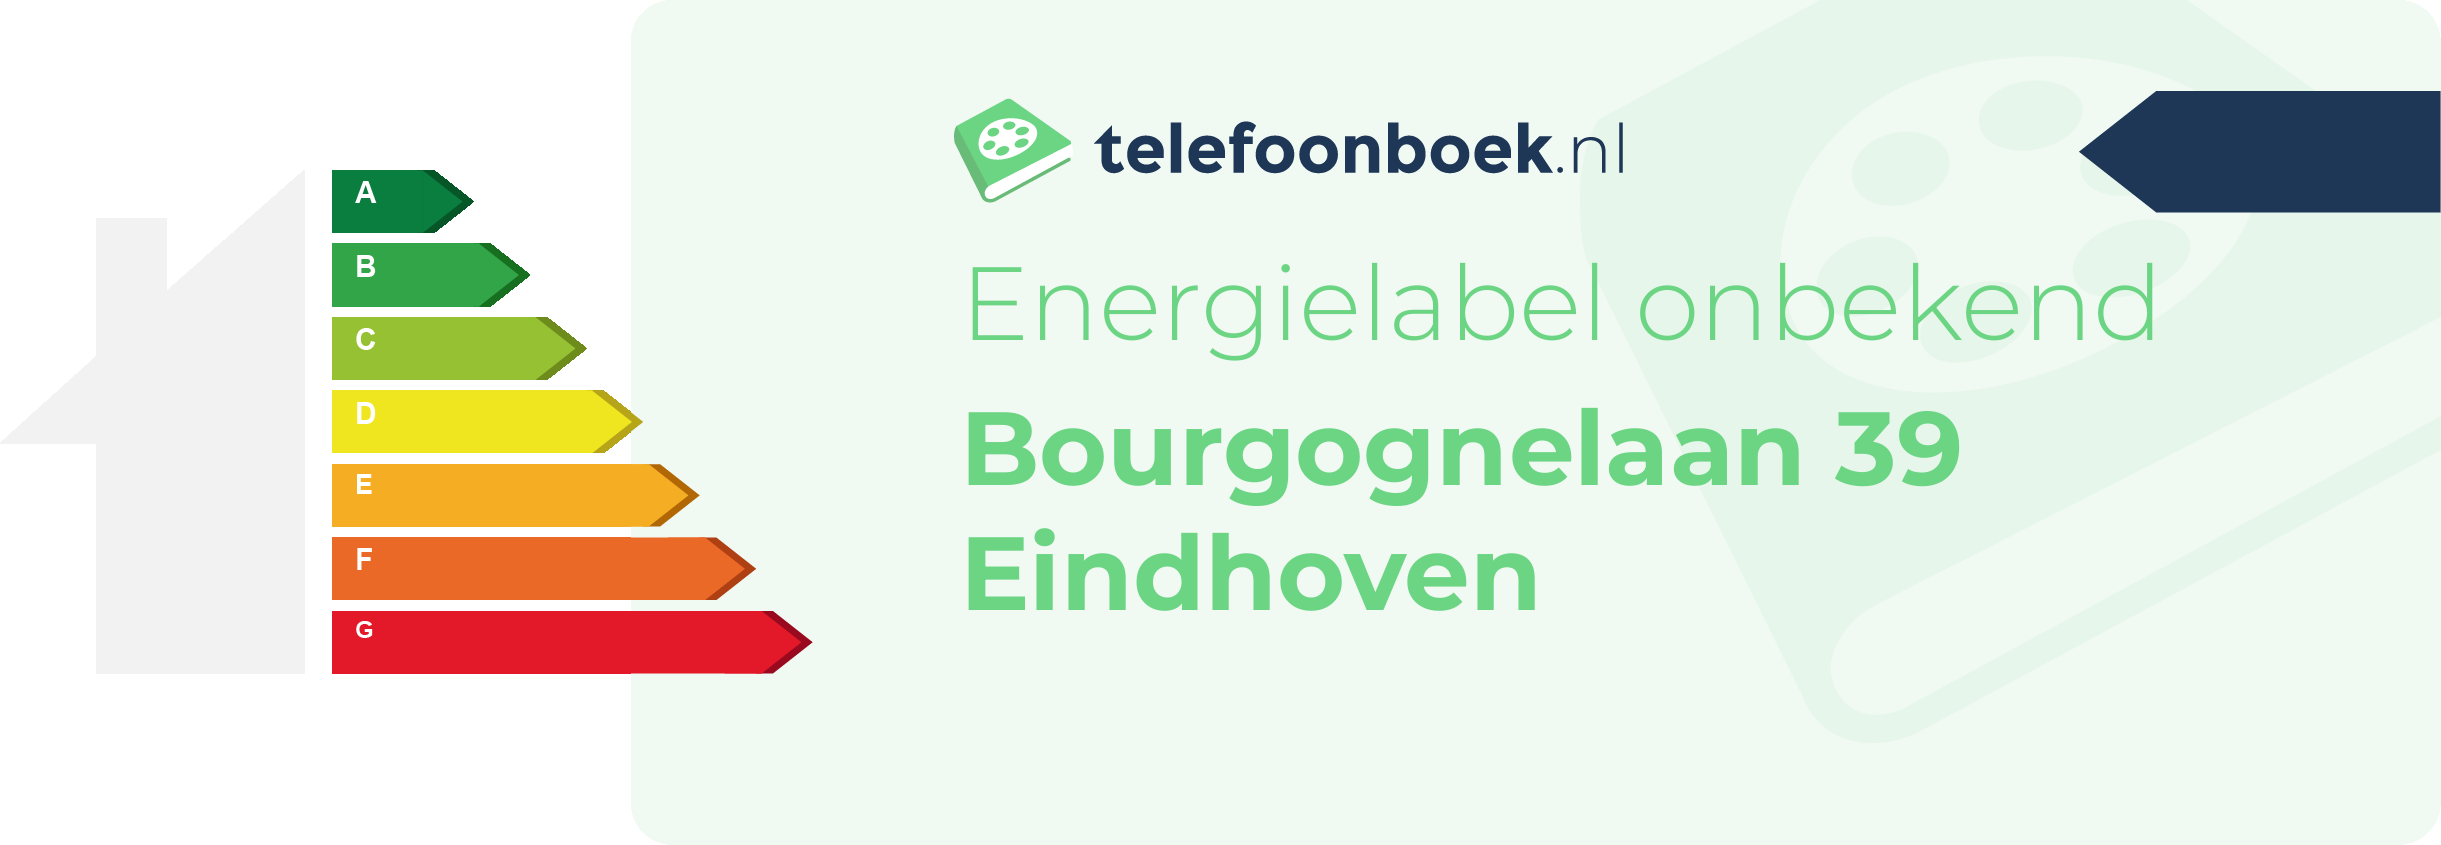 Energielabel Bourgognelaan 39 Eindhoven